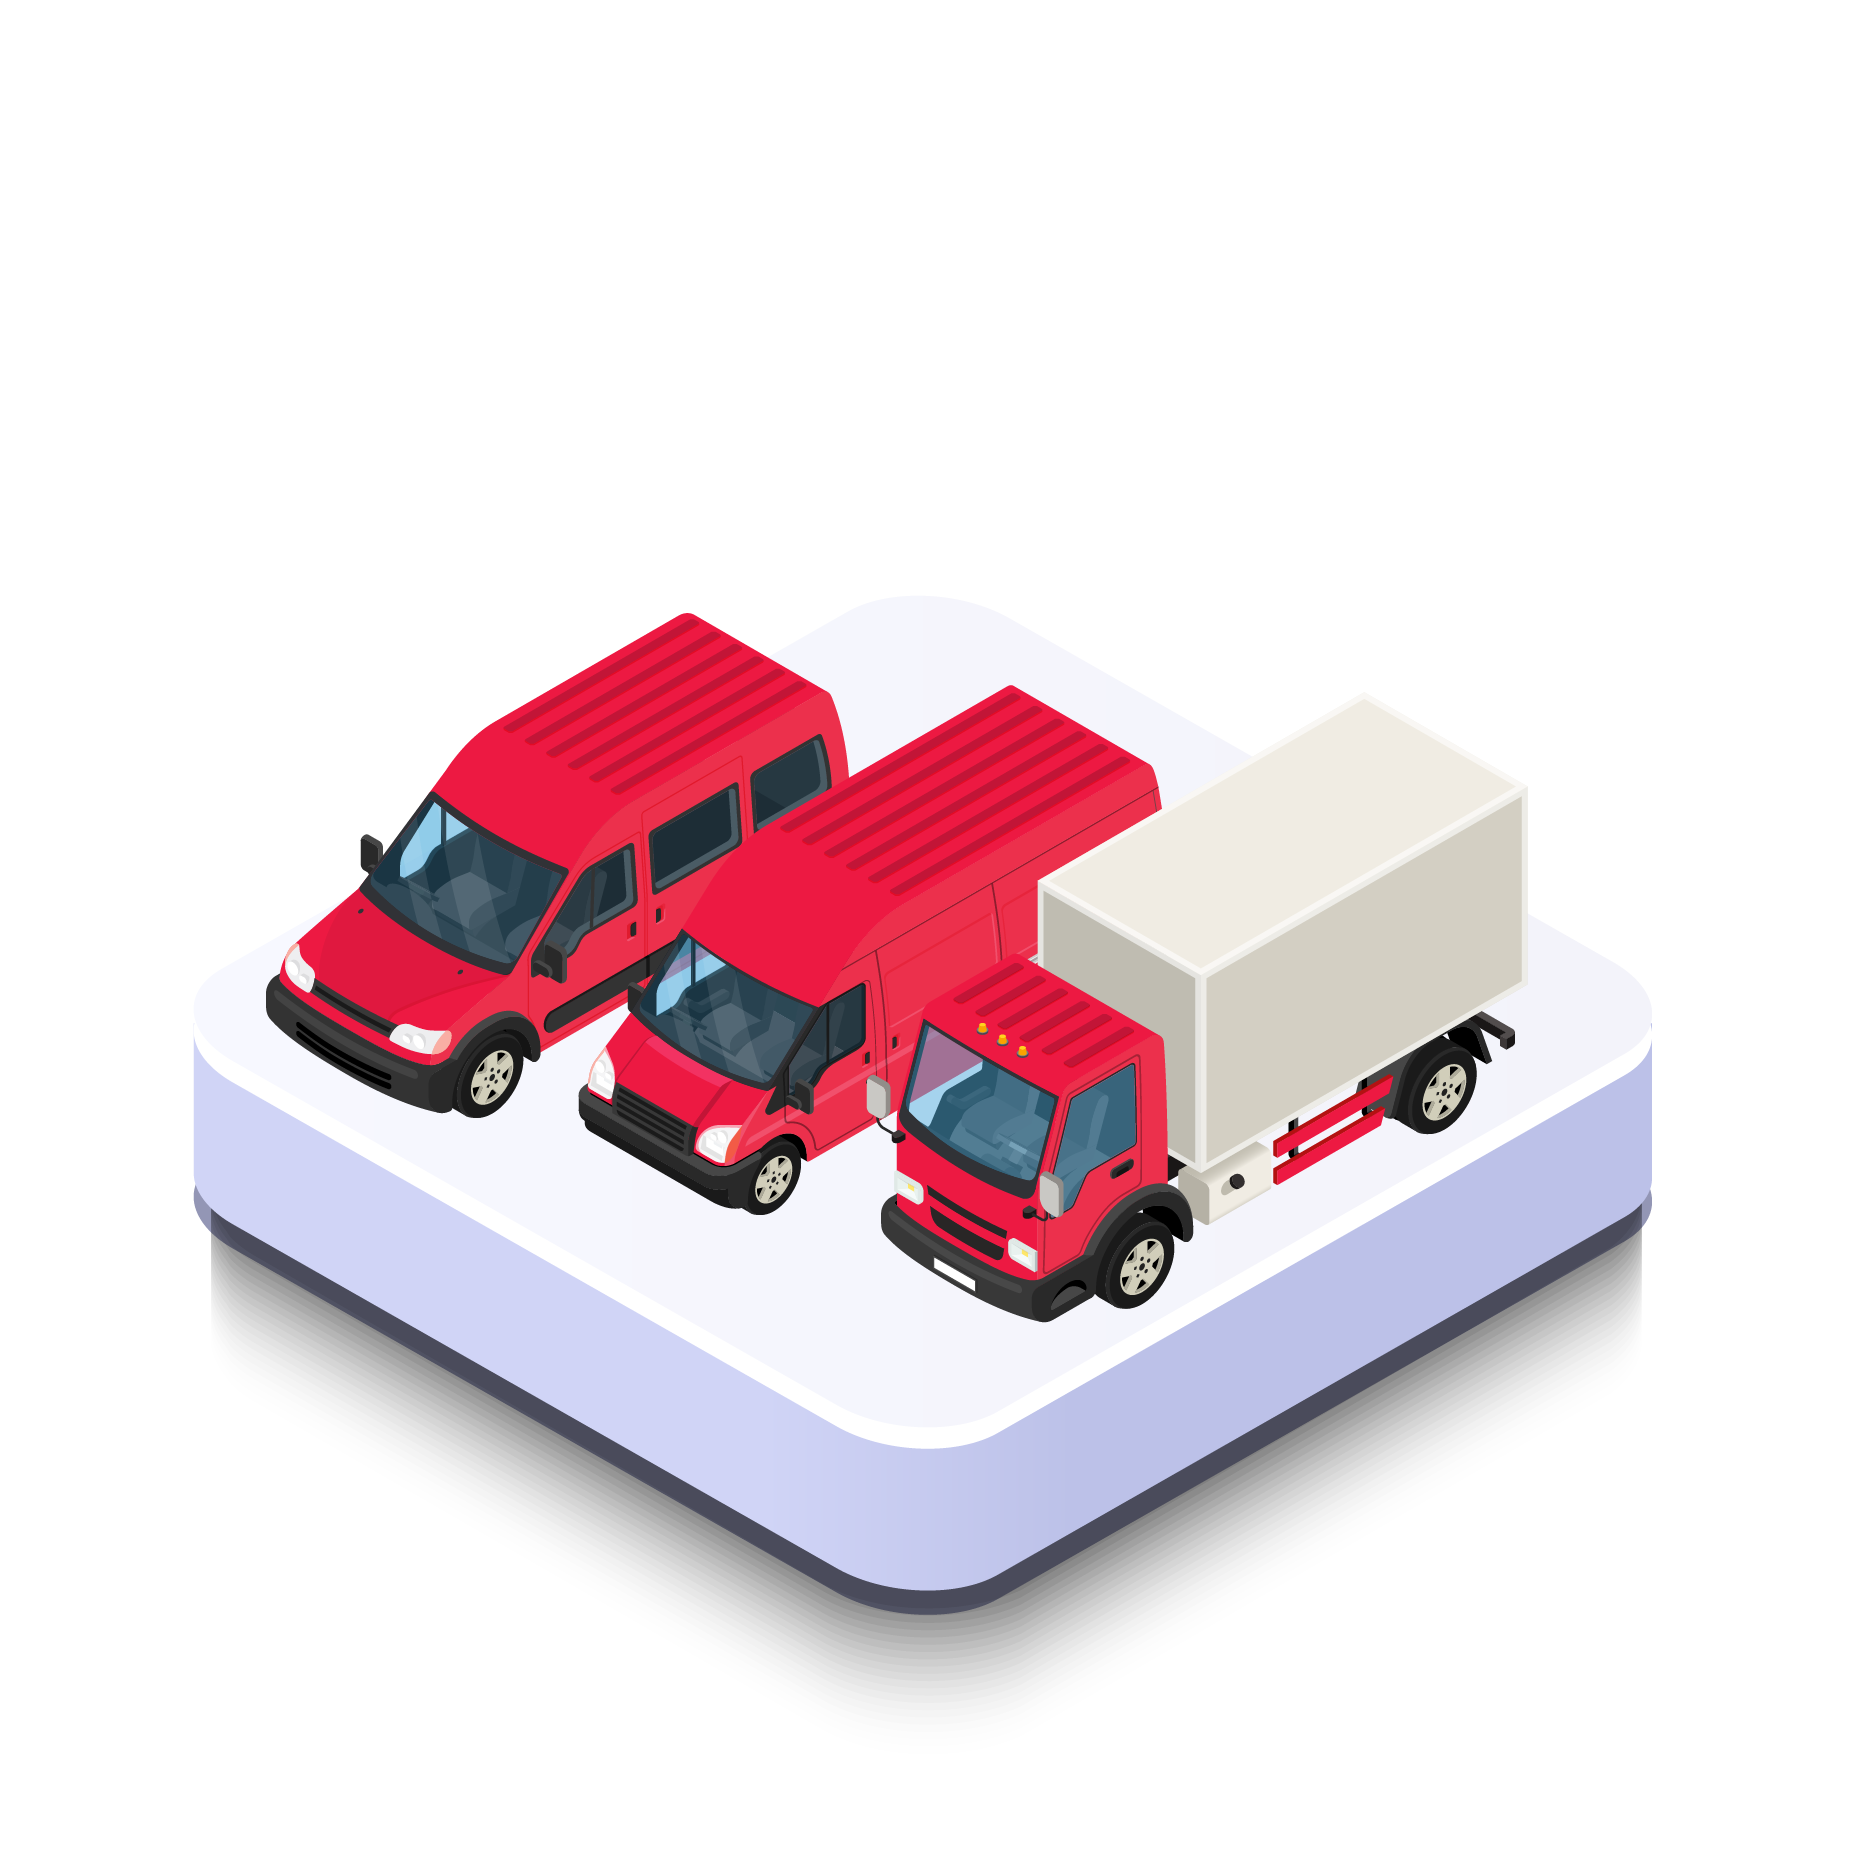 Vehicles